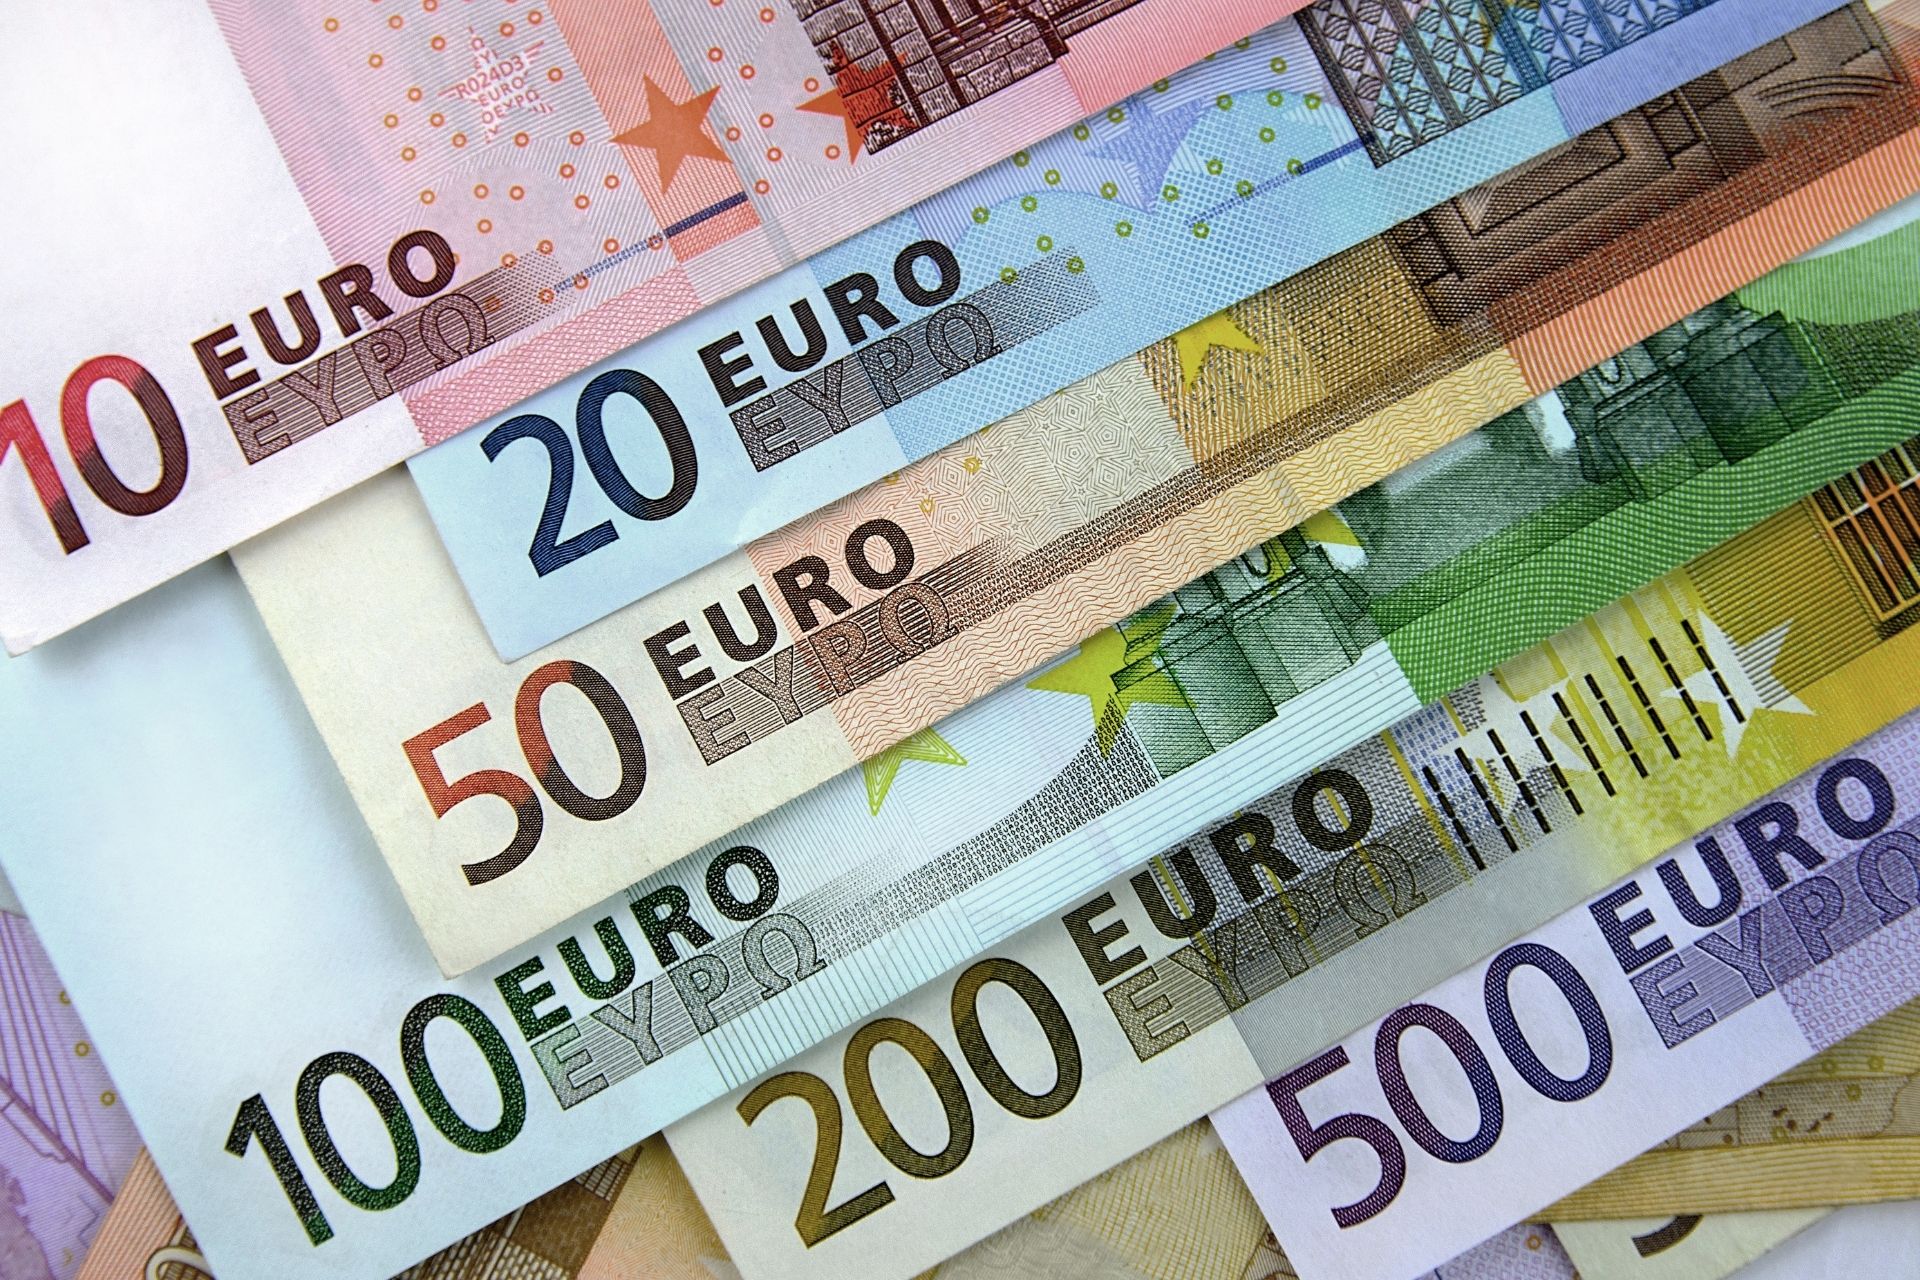 dupa amiaza Educația școlară 鍔 cât este euro la cursul valutar mai tare Inspecta la sută